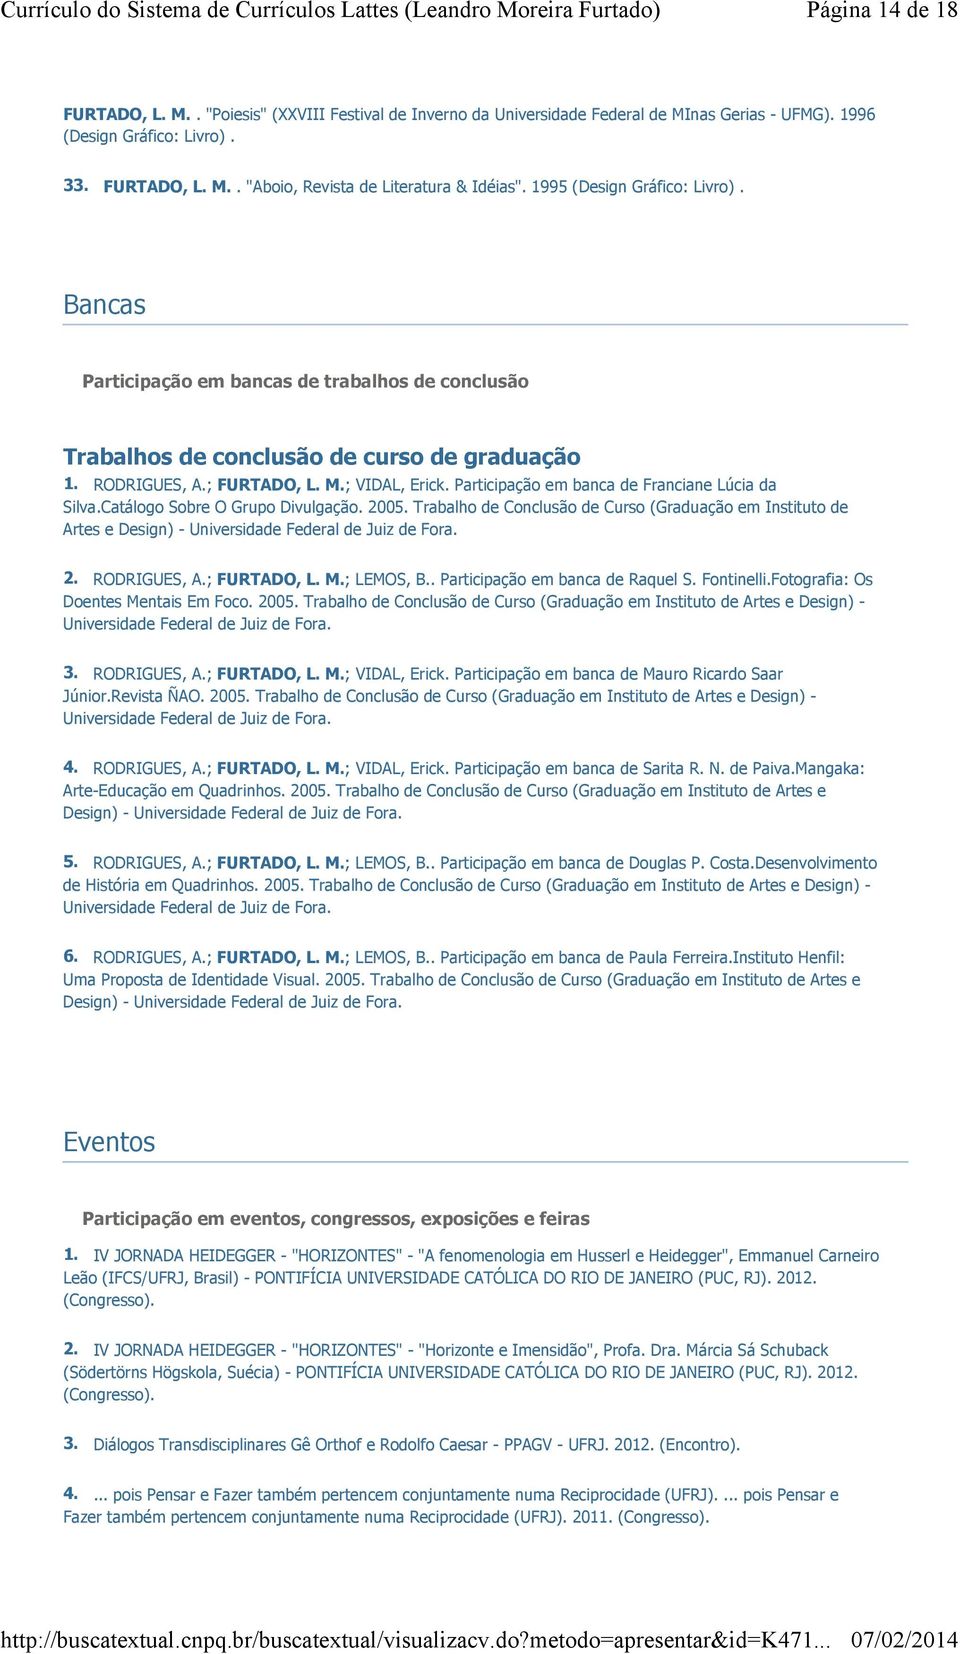 Participação em banca de Franciane Lúcia da Silva.Catálogo Sobre O Grupo Divulgação. 2005.